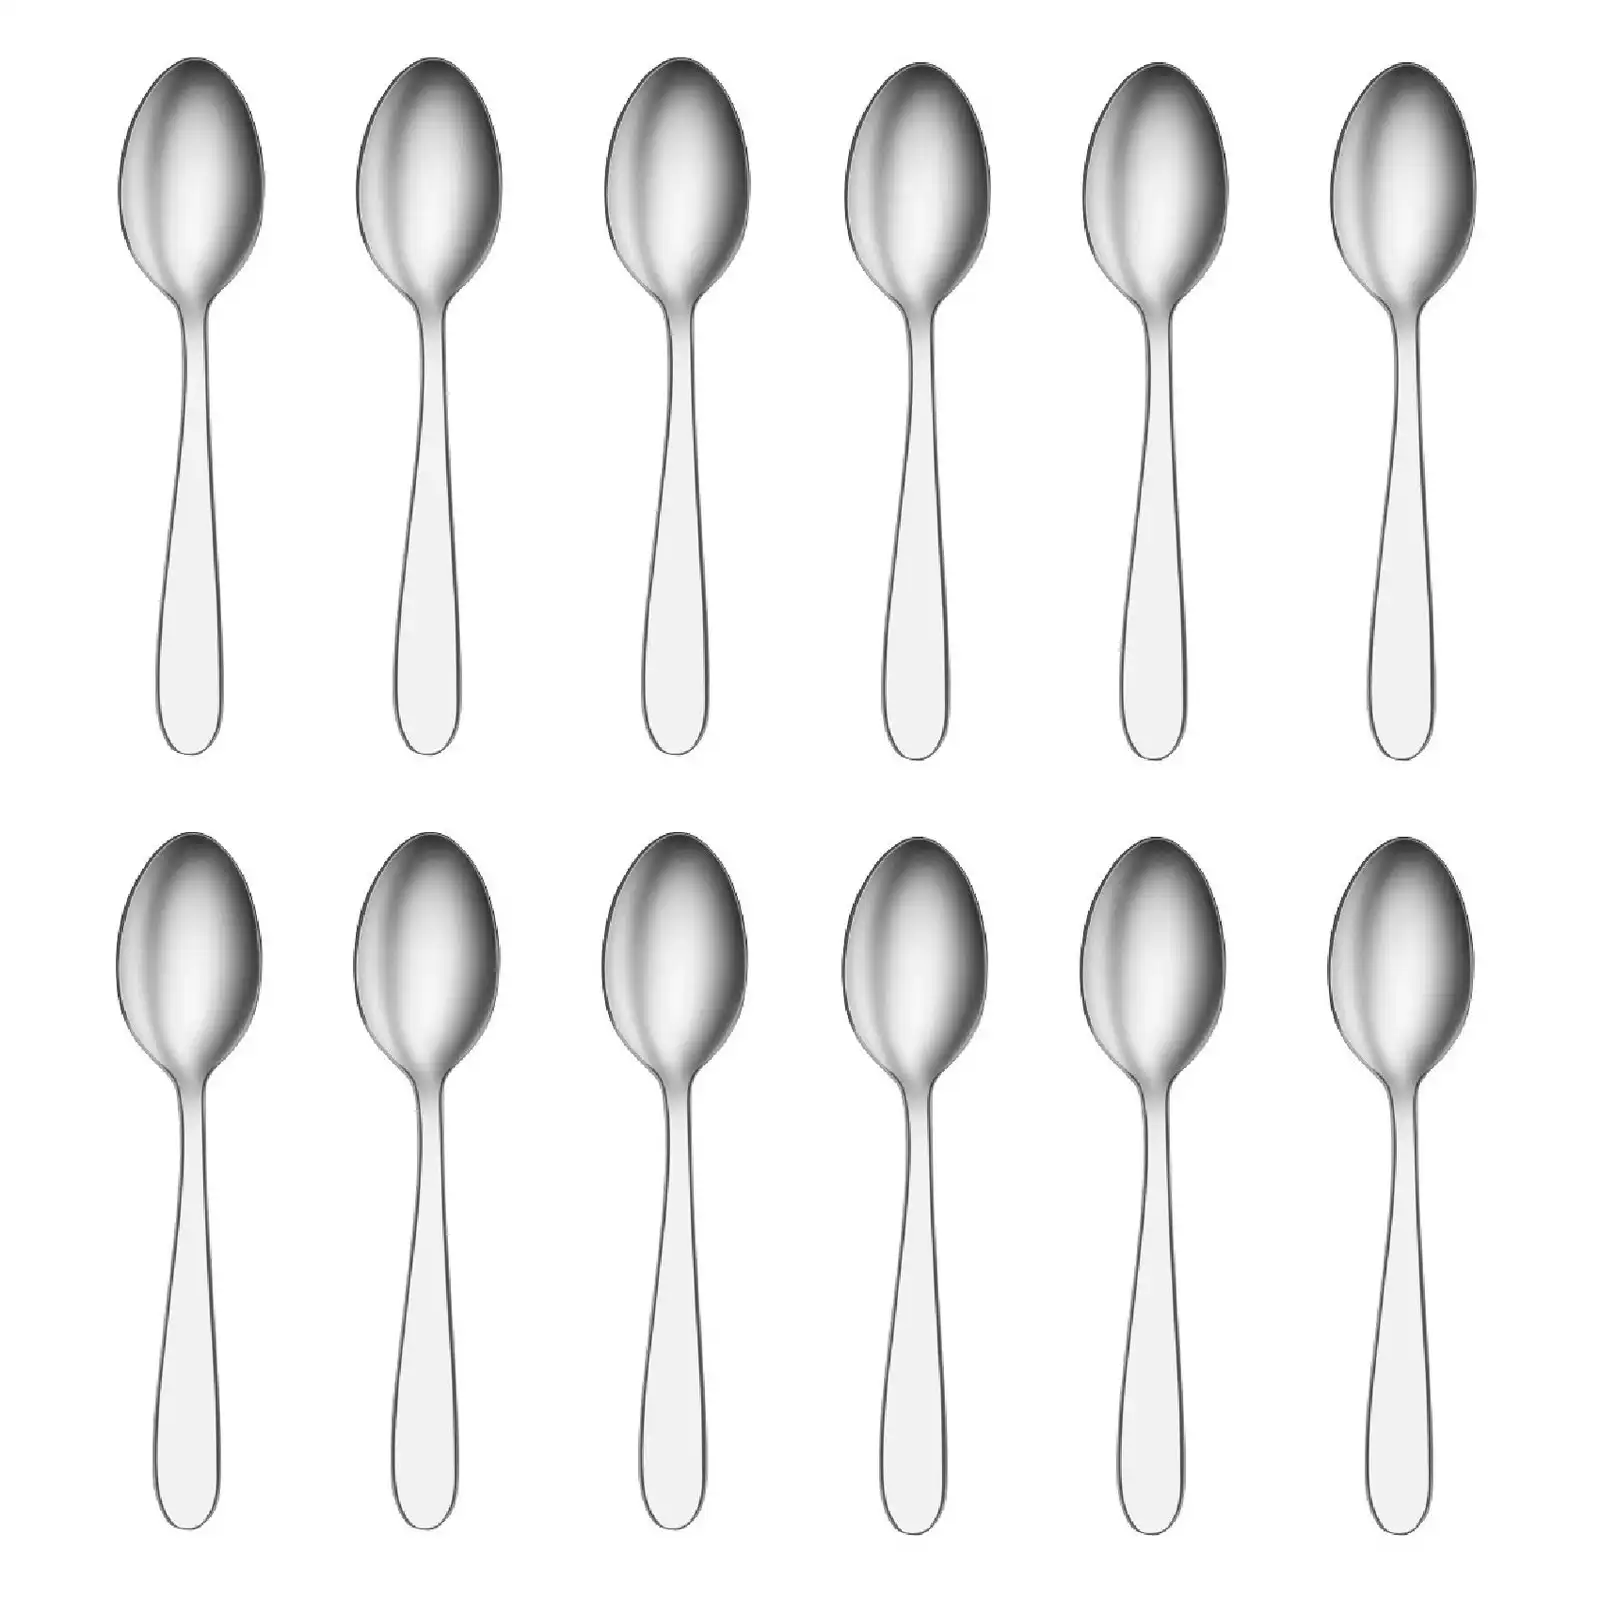 Tablekraft Luxor Stainless Steel Coffee Spoons Set 12